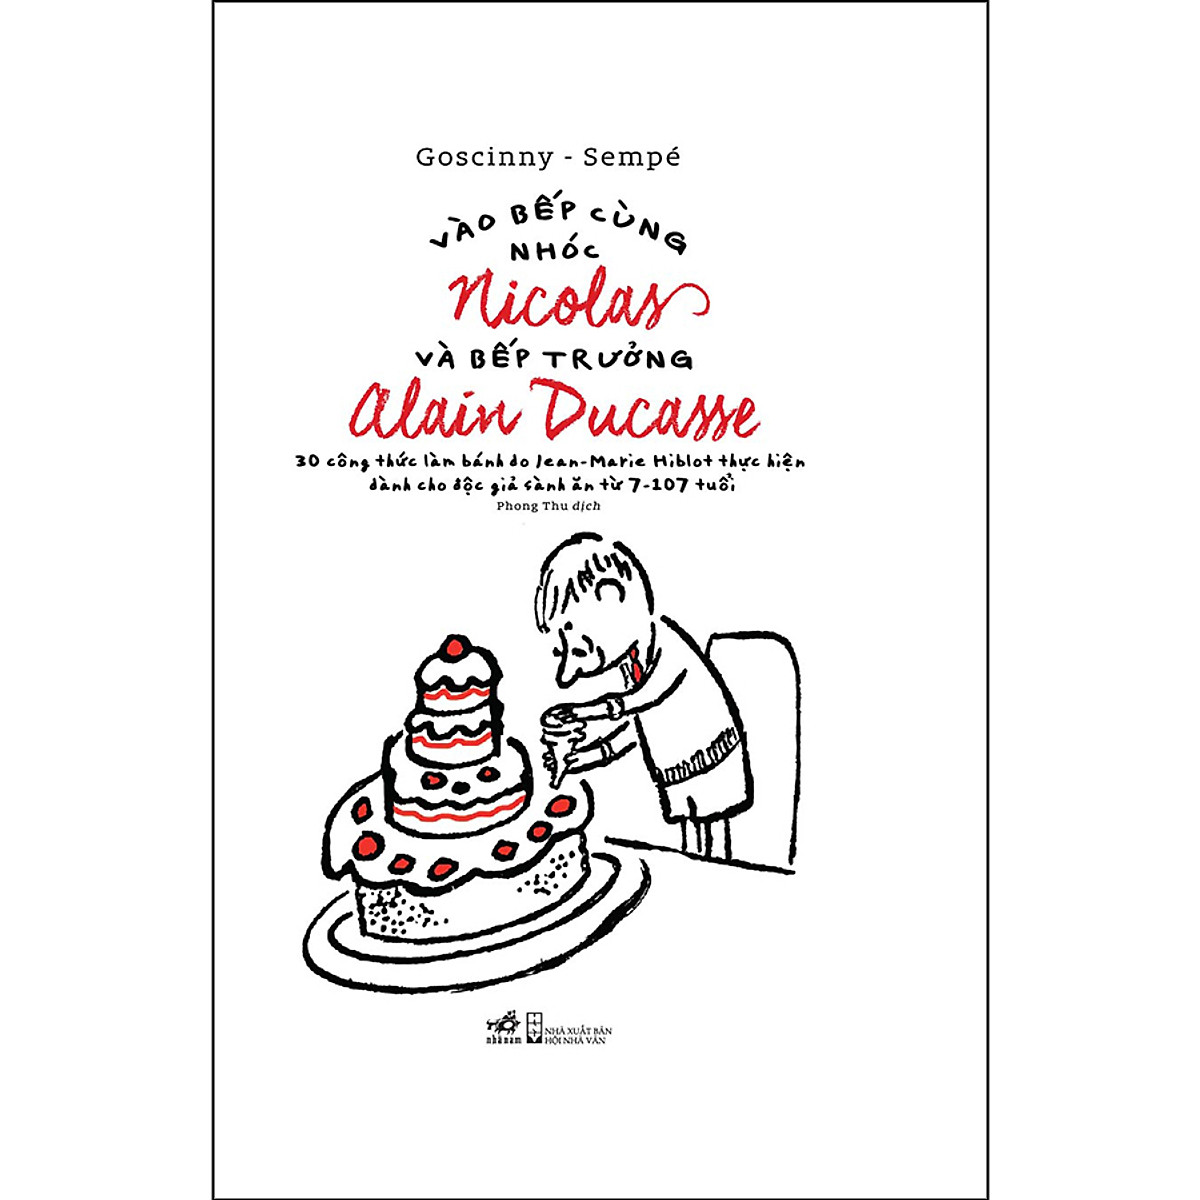 Combo 2 cuốn sách: Nhóc Nicolas phiền muộn   + Vào Bếp Cùng Nhóc Nicolas Và Bếp Trưởng Alain Ducasse